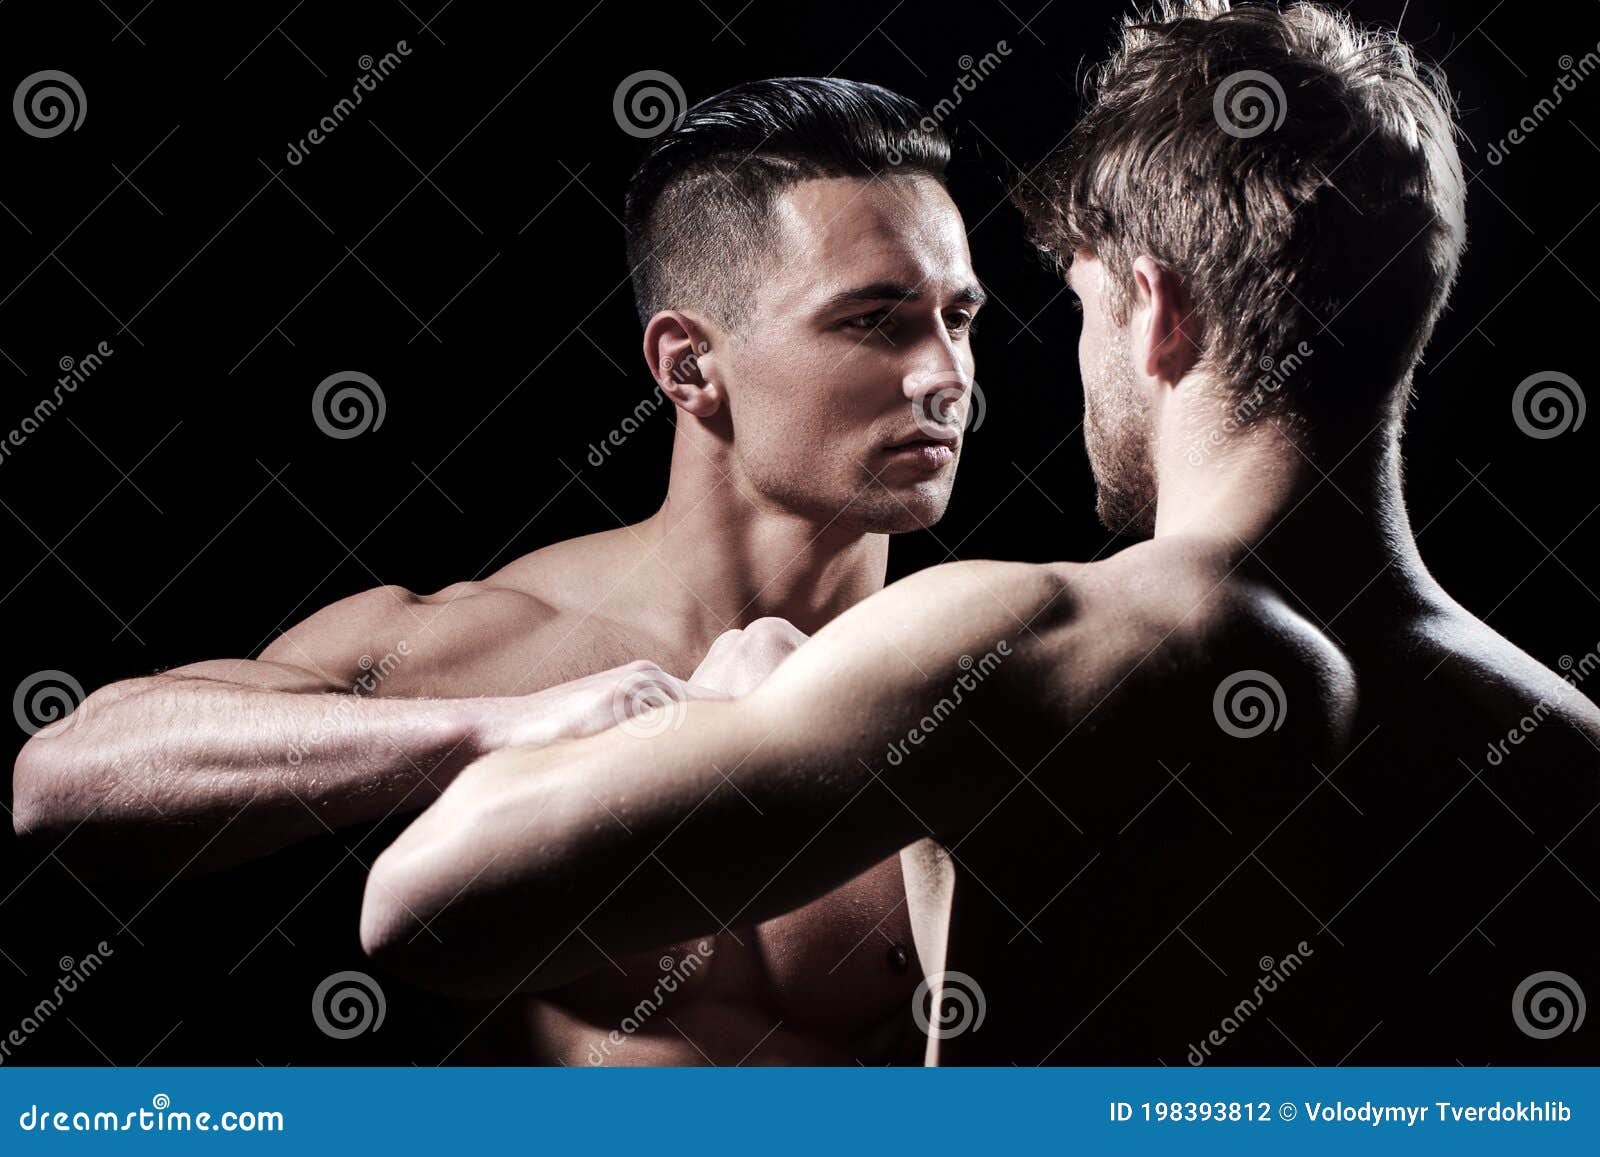 Nude Men Boxing